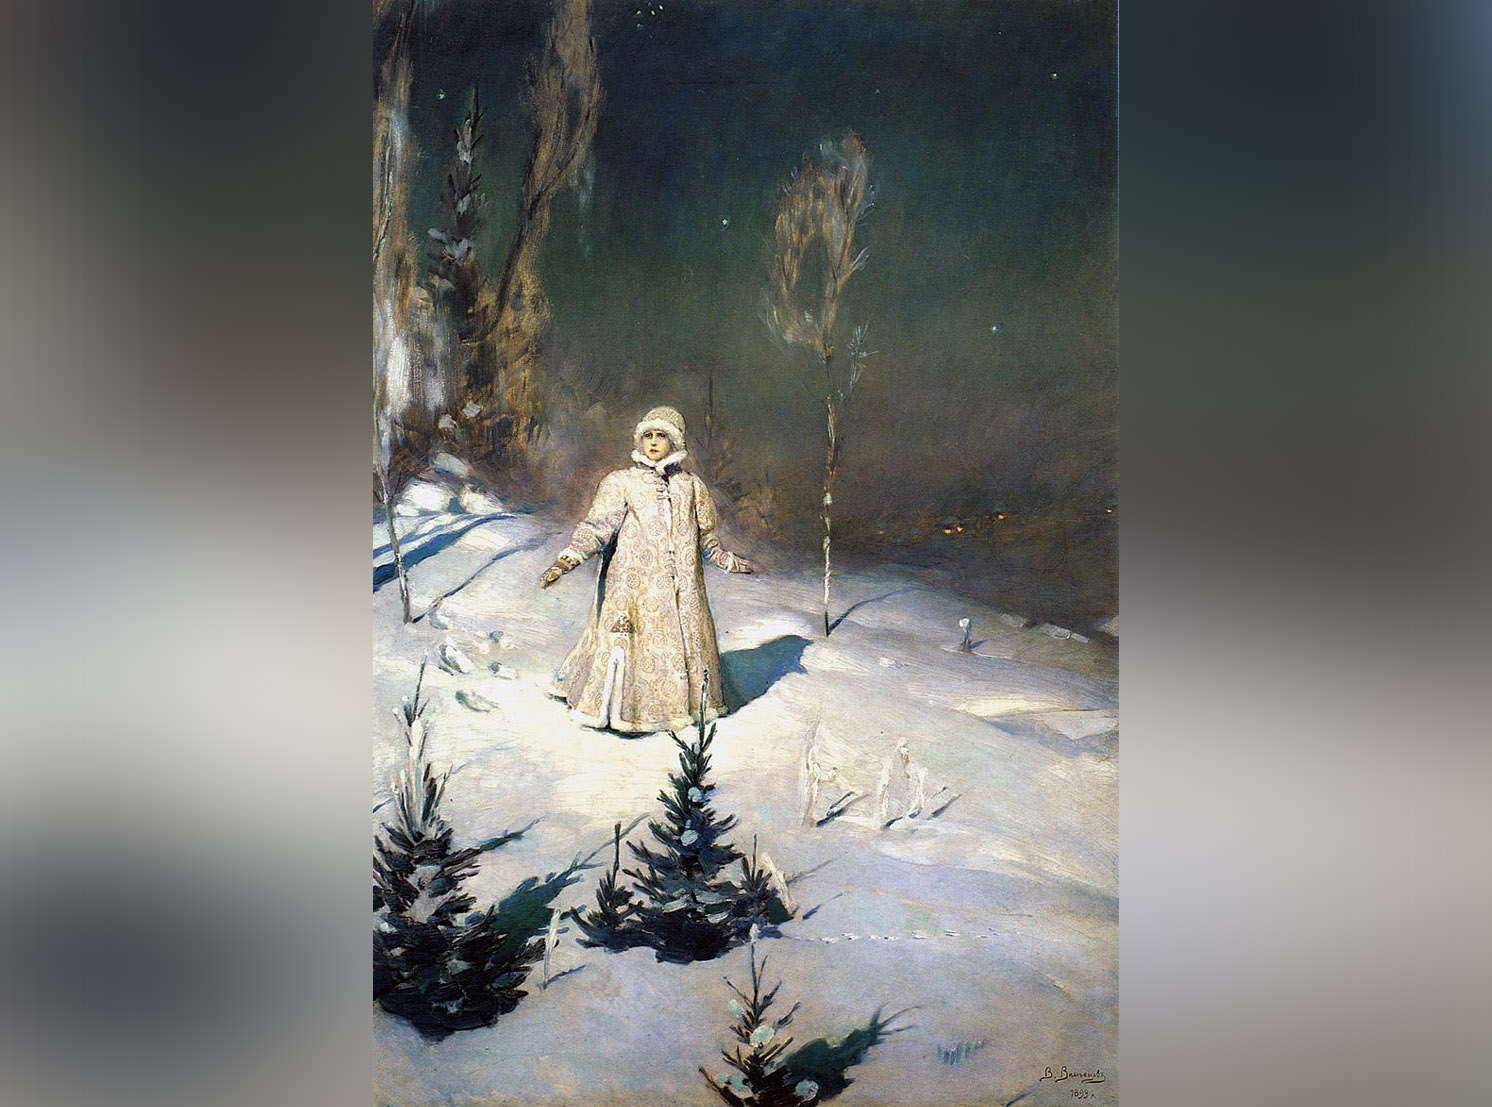 Картина Віктора Васнєцова "Снігуронька", 1899 рік